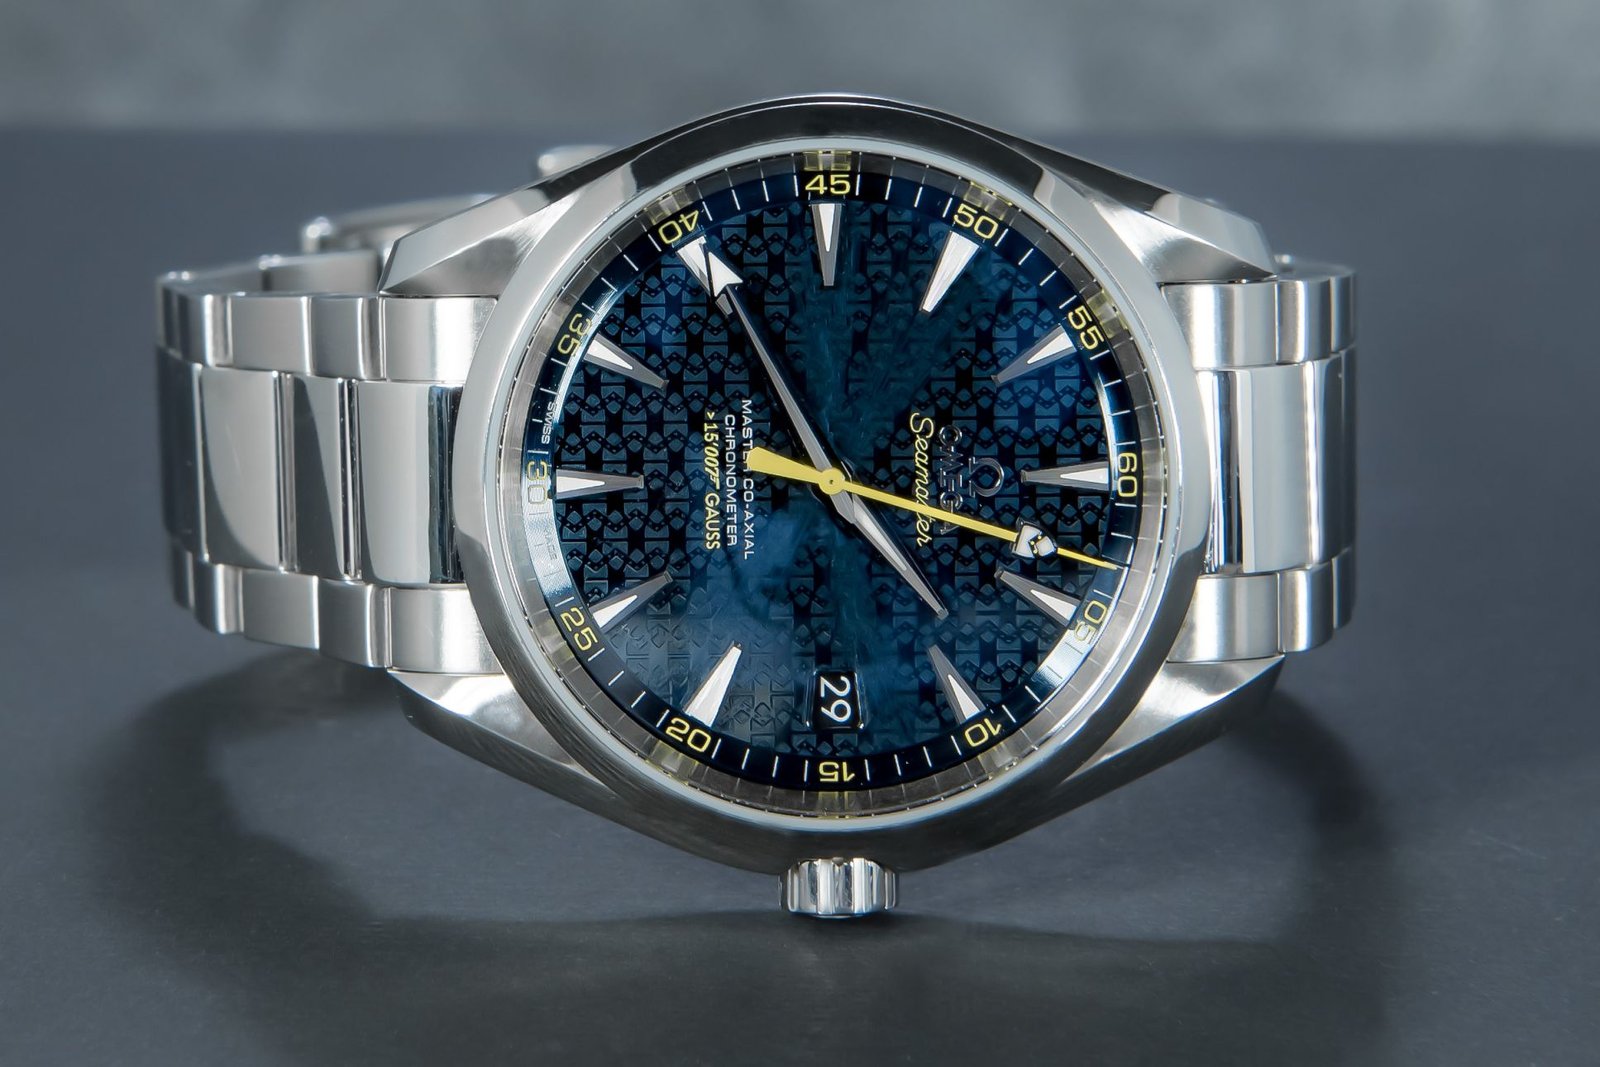 omega spectre watch ebay